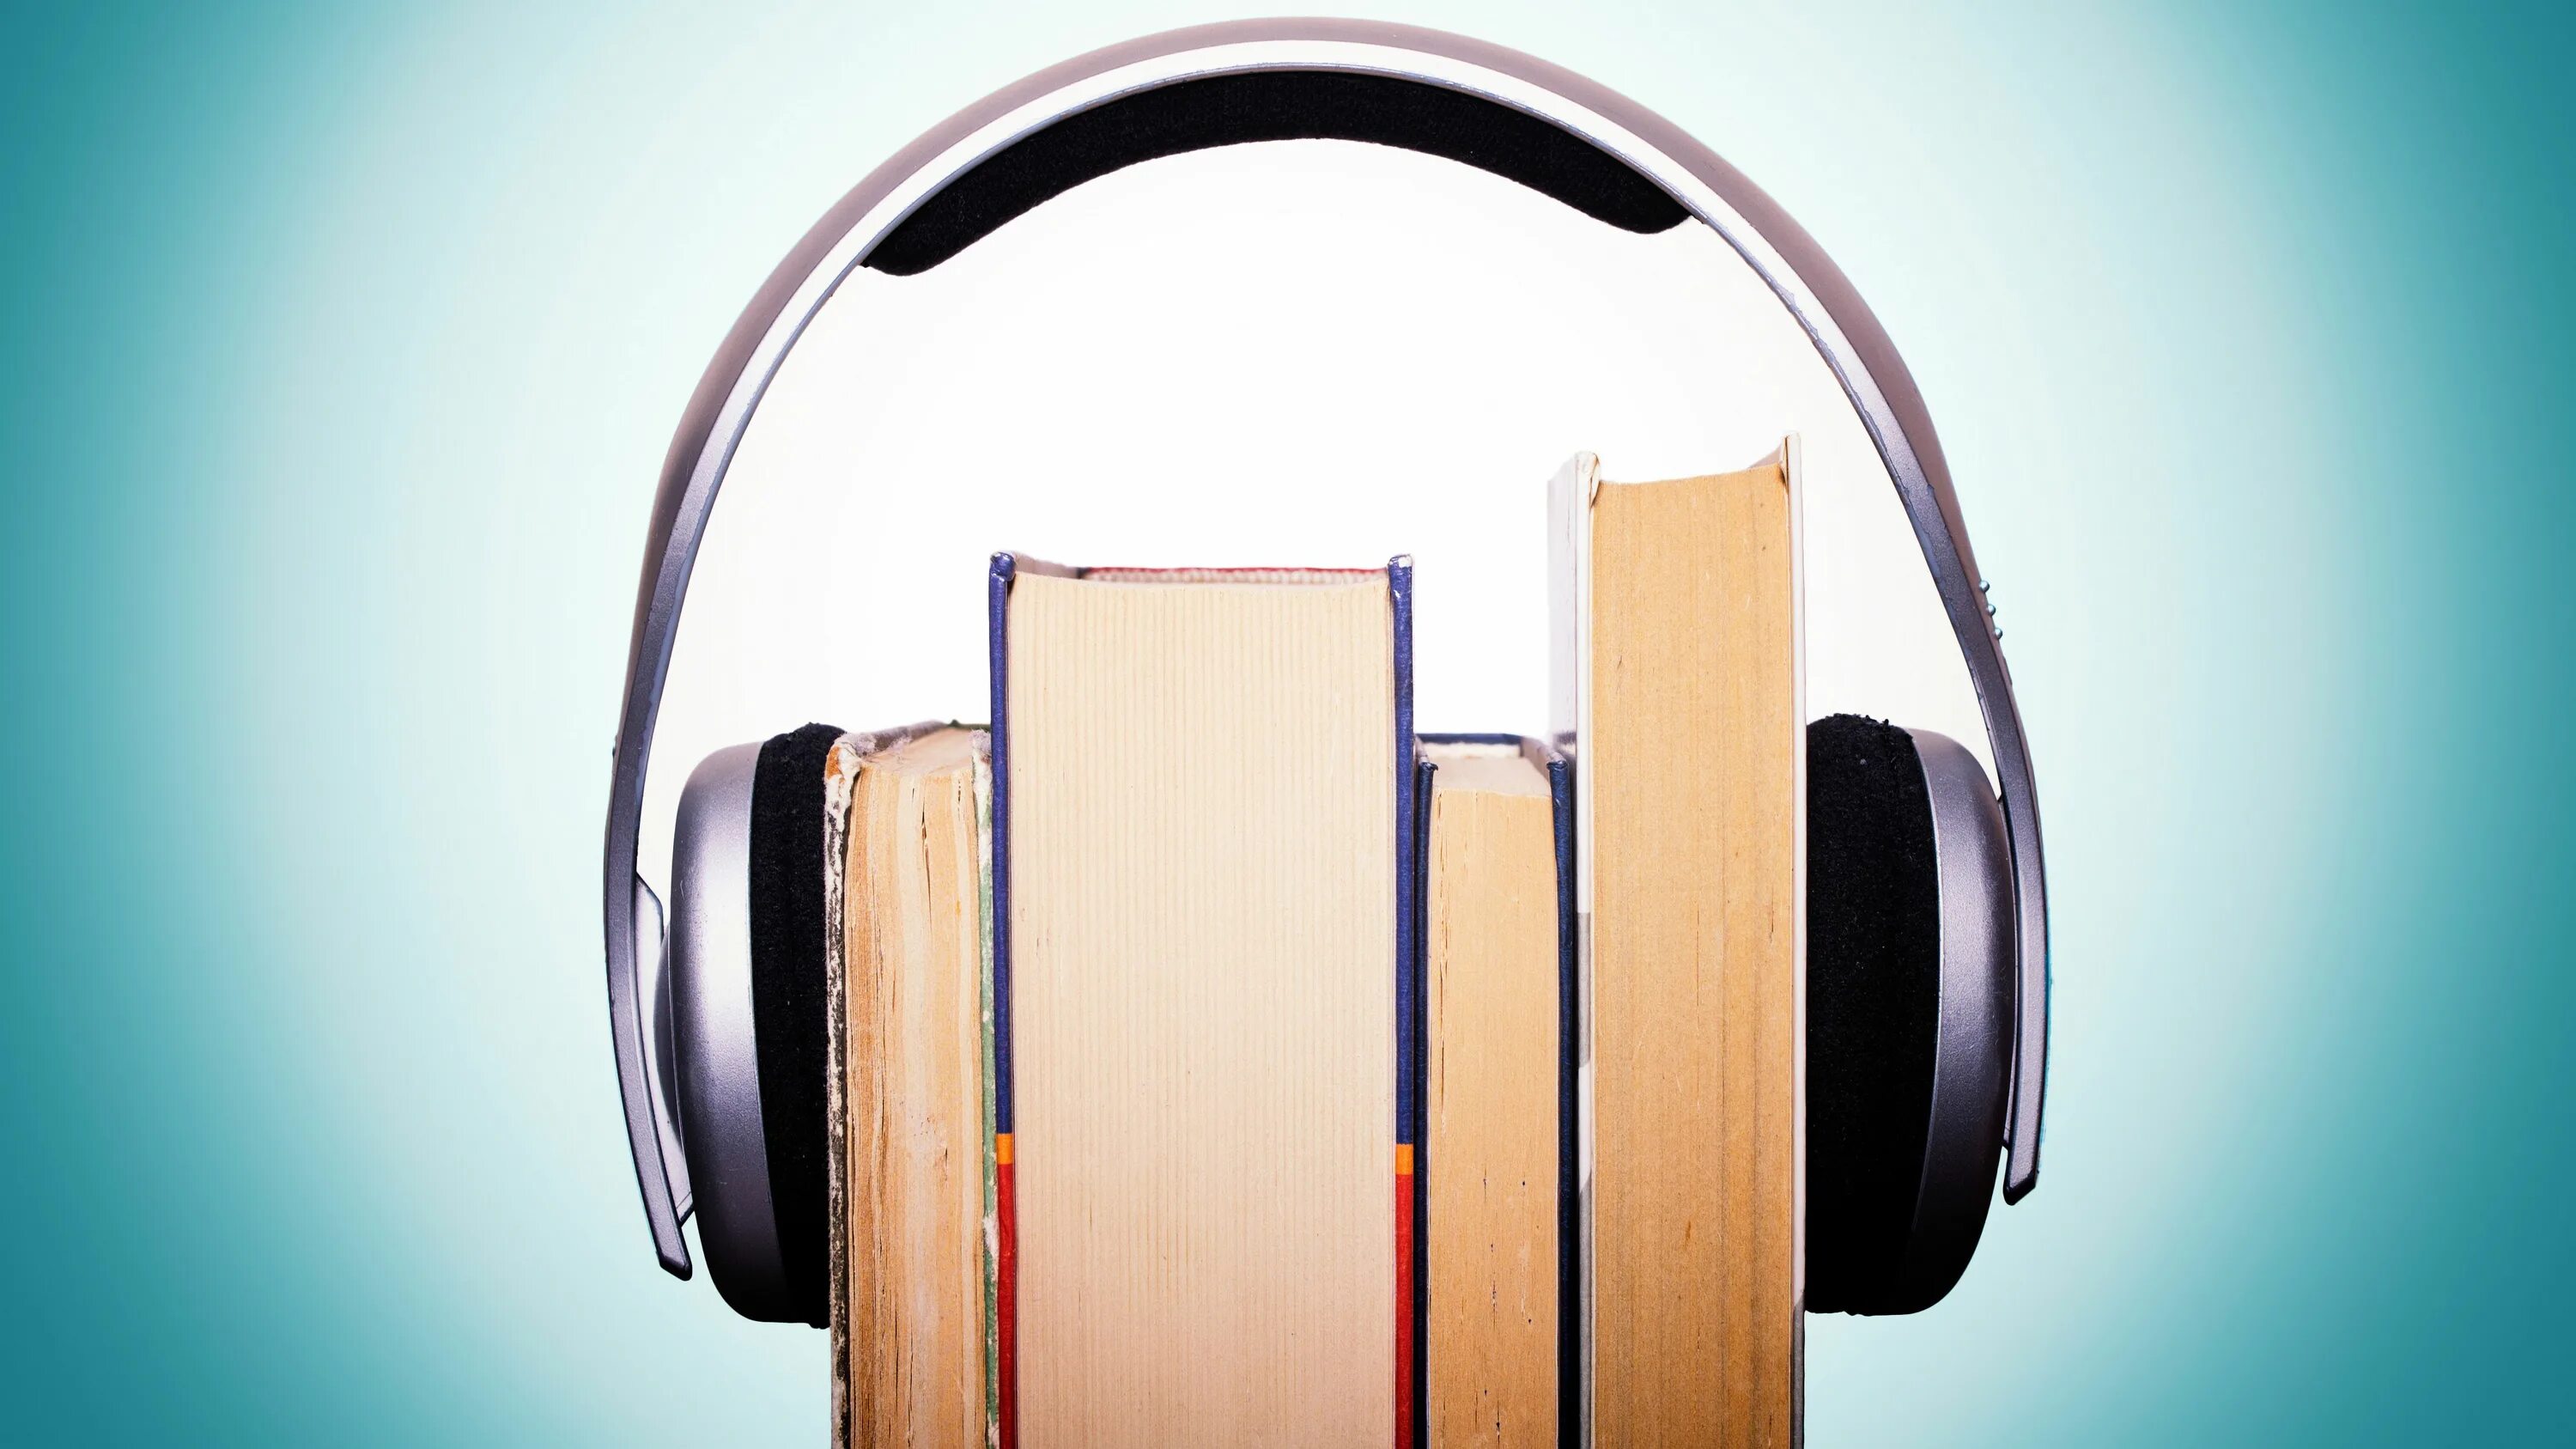 Аудиокнига на час слушать. Книга в наушниках. Книжка с наушниками. Прослушивание аудио. Книга и наушники.